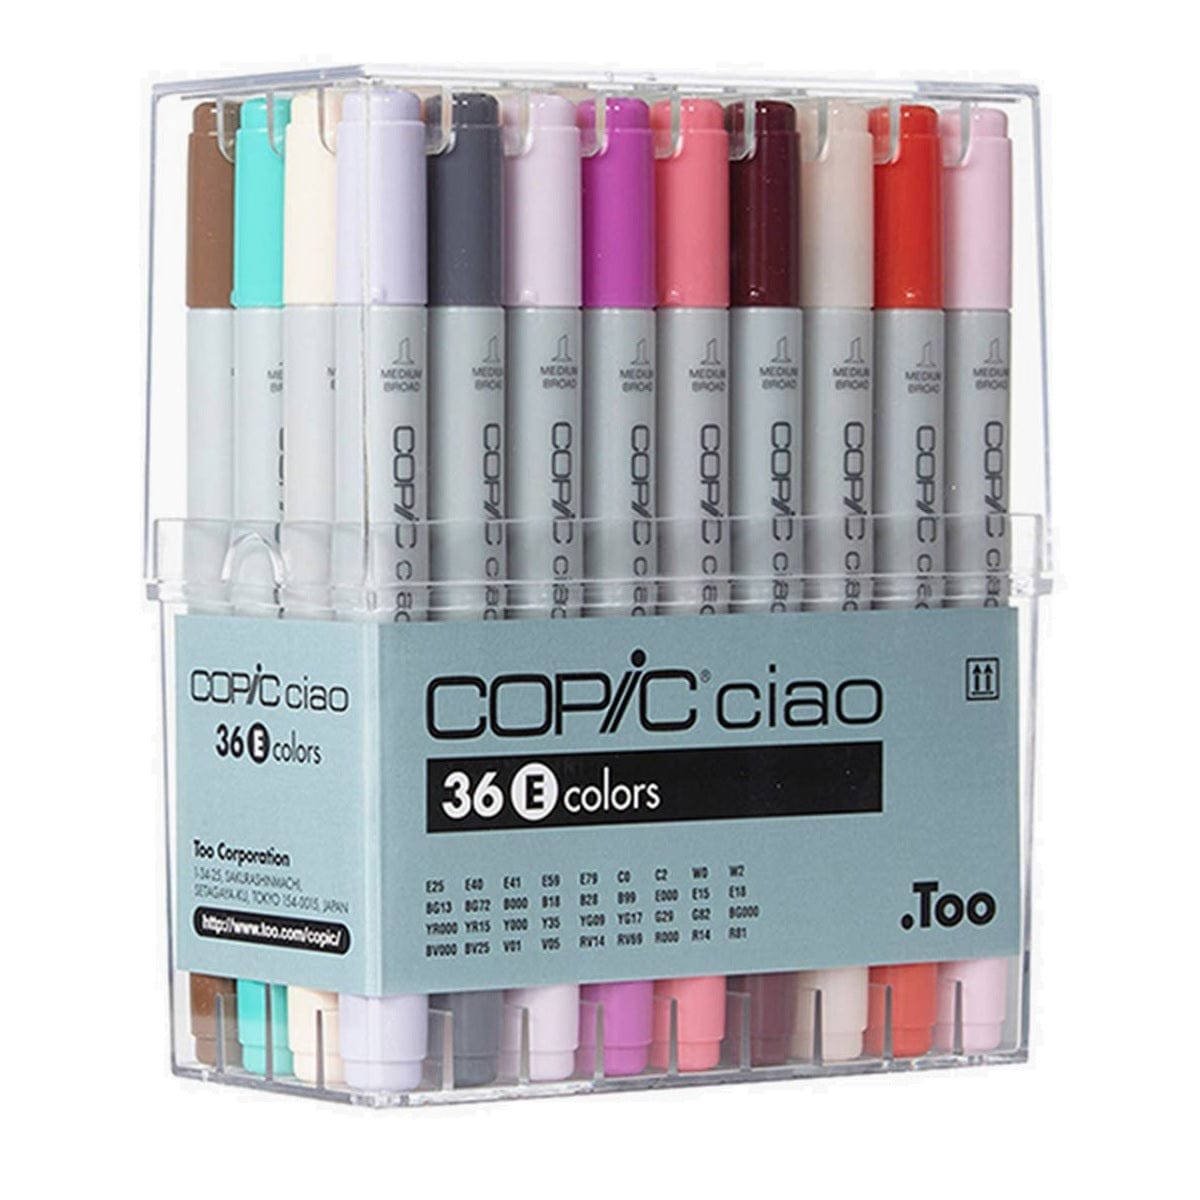 Copic Toys Copic Ciao Set of 36pc Set E Colors